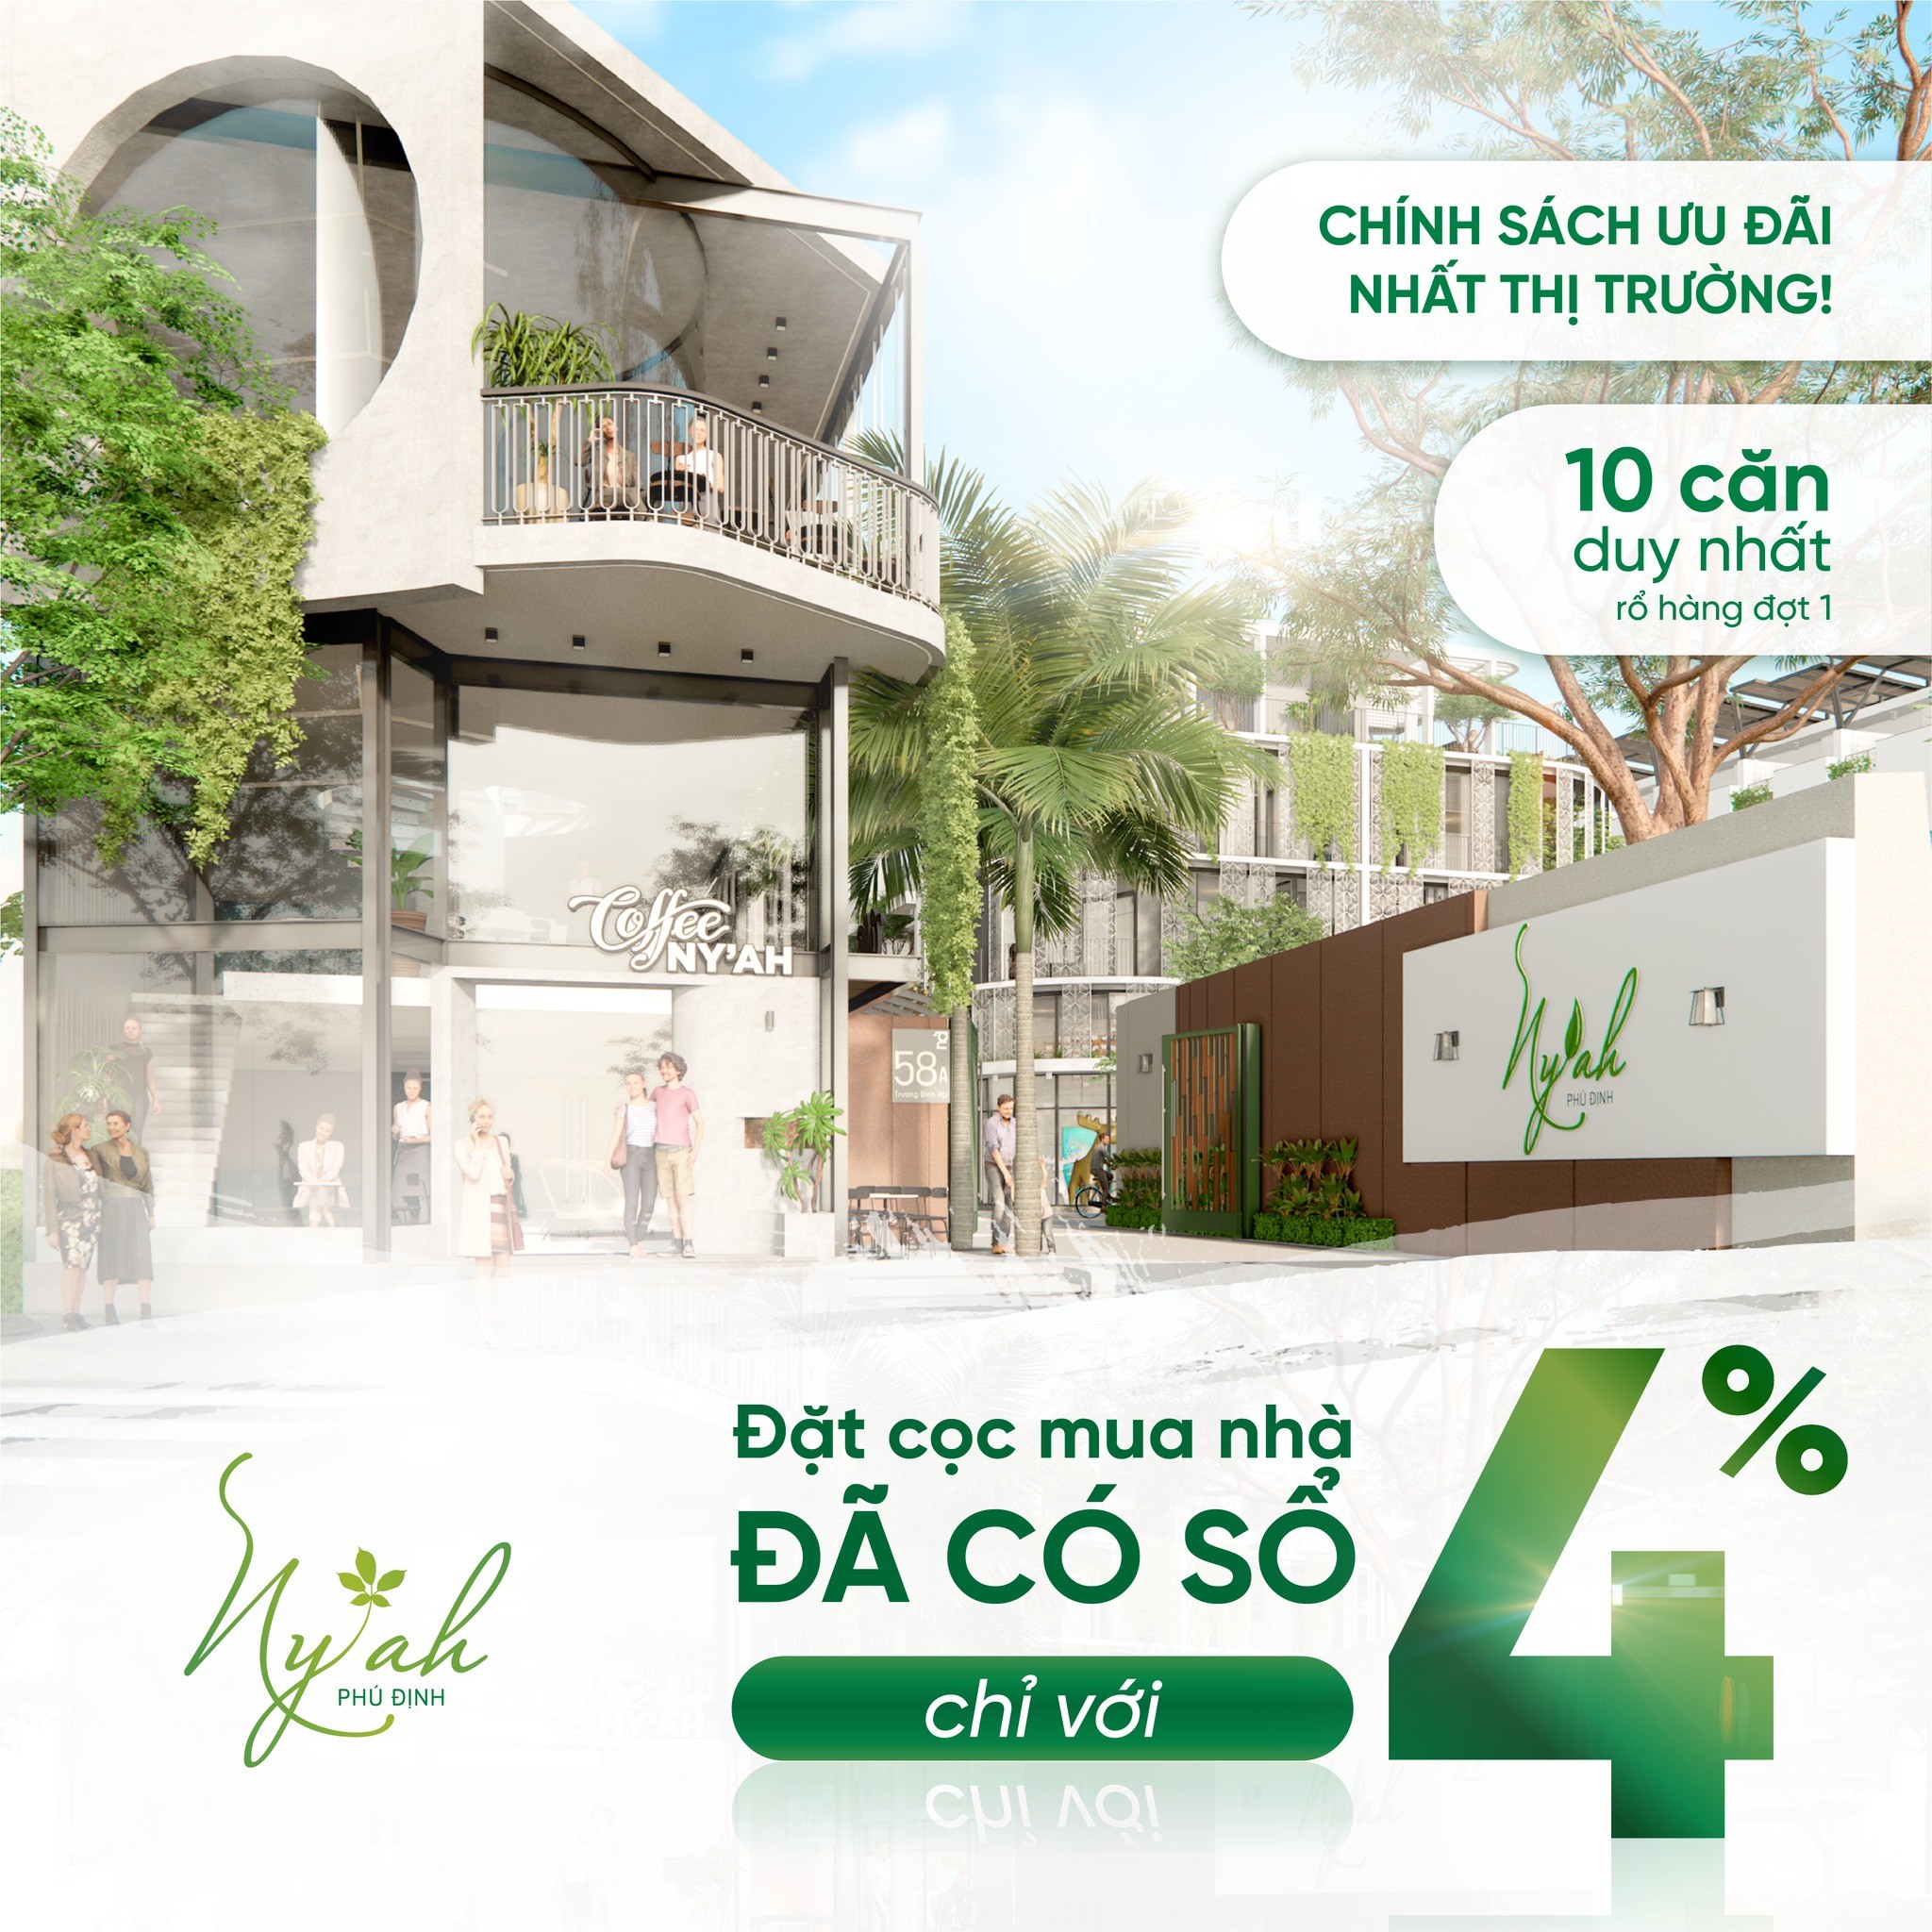 Bán nhà phố liền kề, khu nhà biệt lập Ny'Ah Phú Định - Quận 8 1